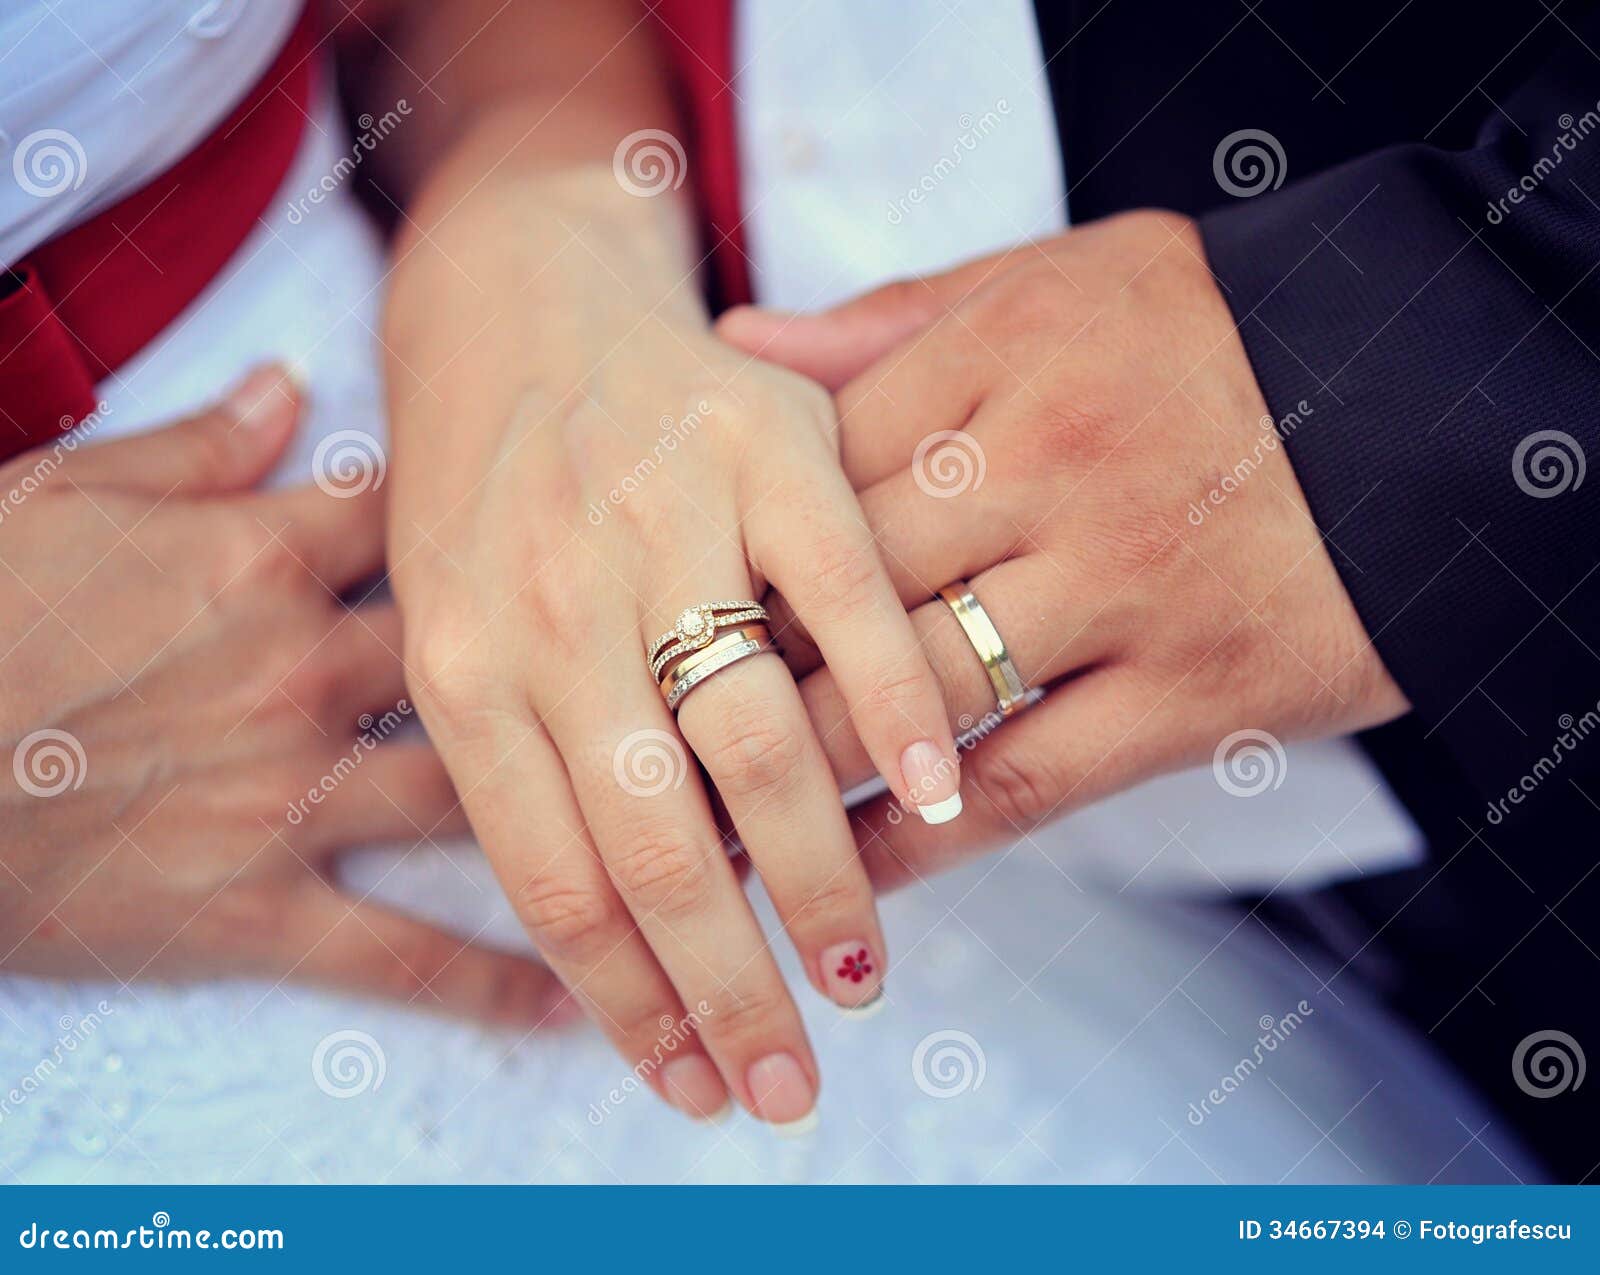 Кольцо когда замужем. Кольцо на пальце предложение. Помолвочное кольцо на пальце. Рука с кольцом предложение. Рука с помолвочным кольцом.